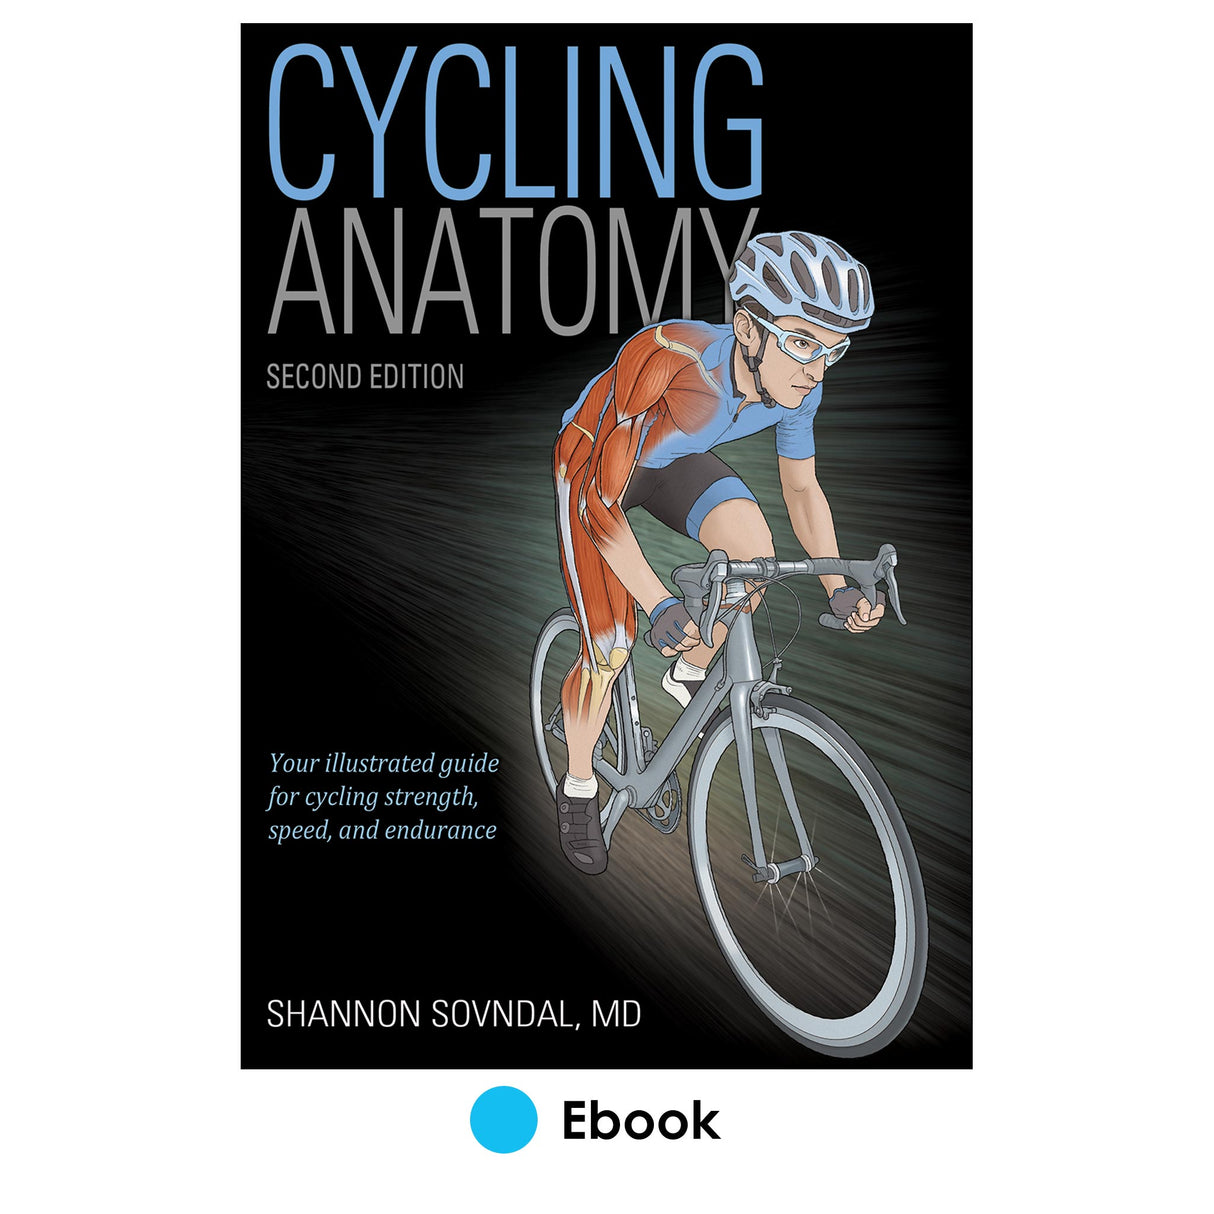 Cycling Anatomy 2nd Edition epub